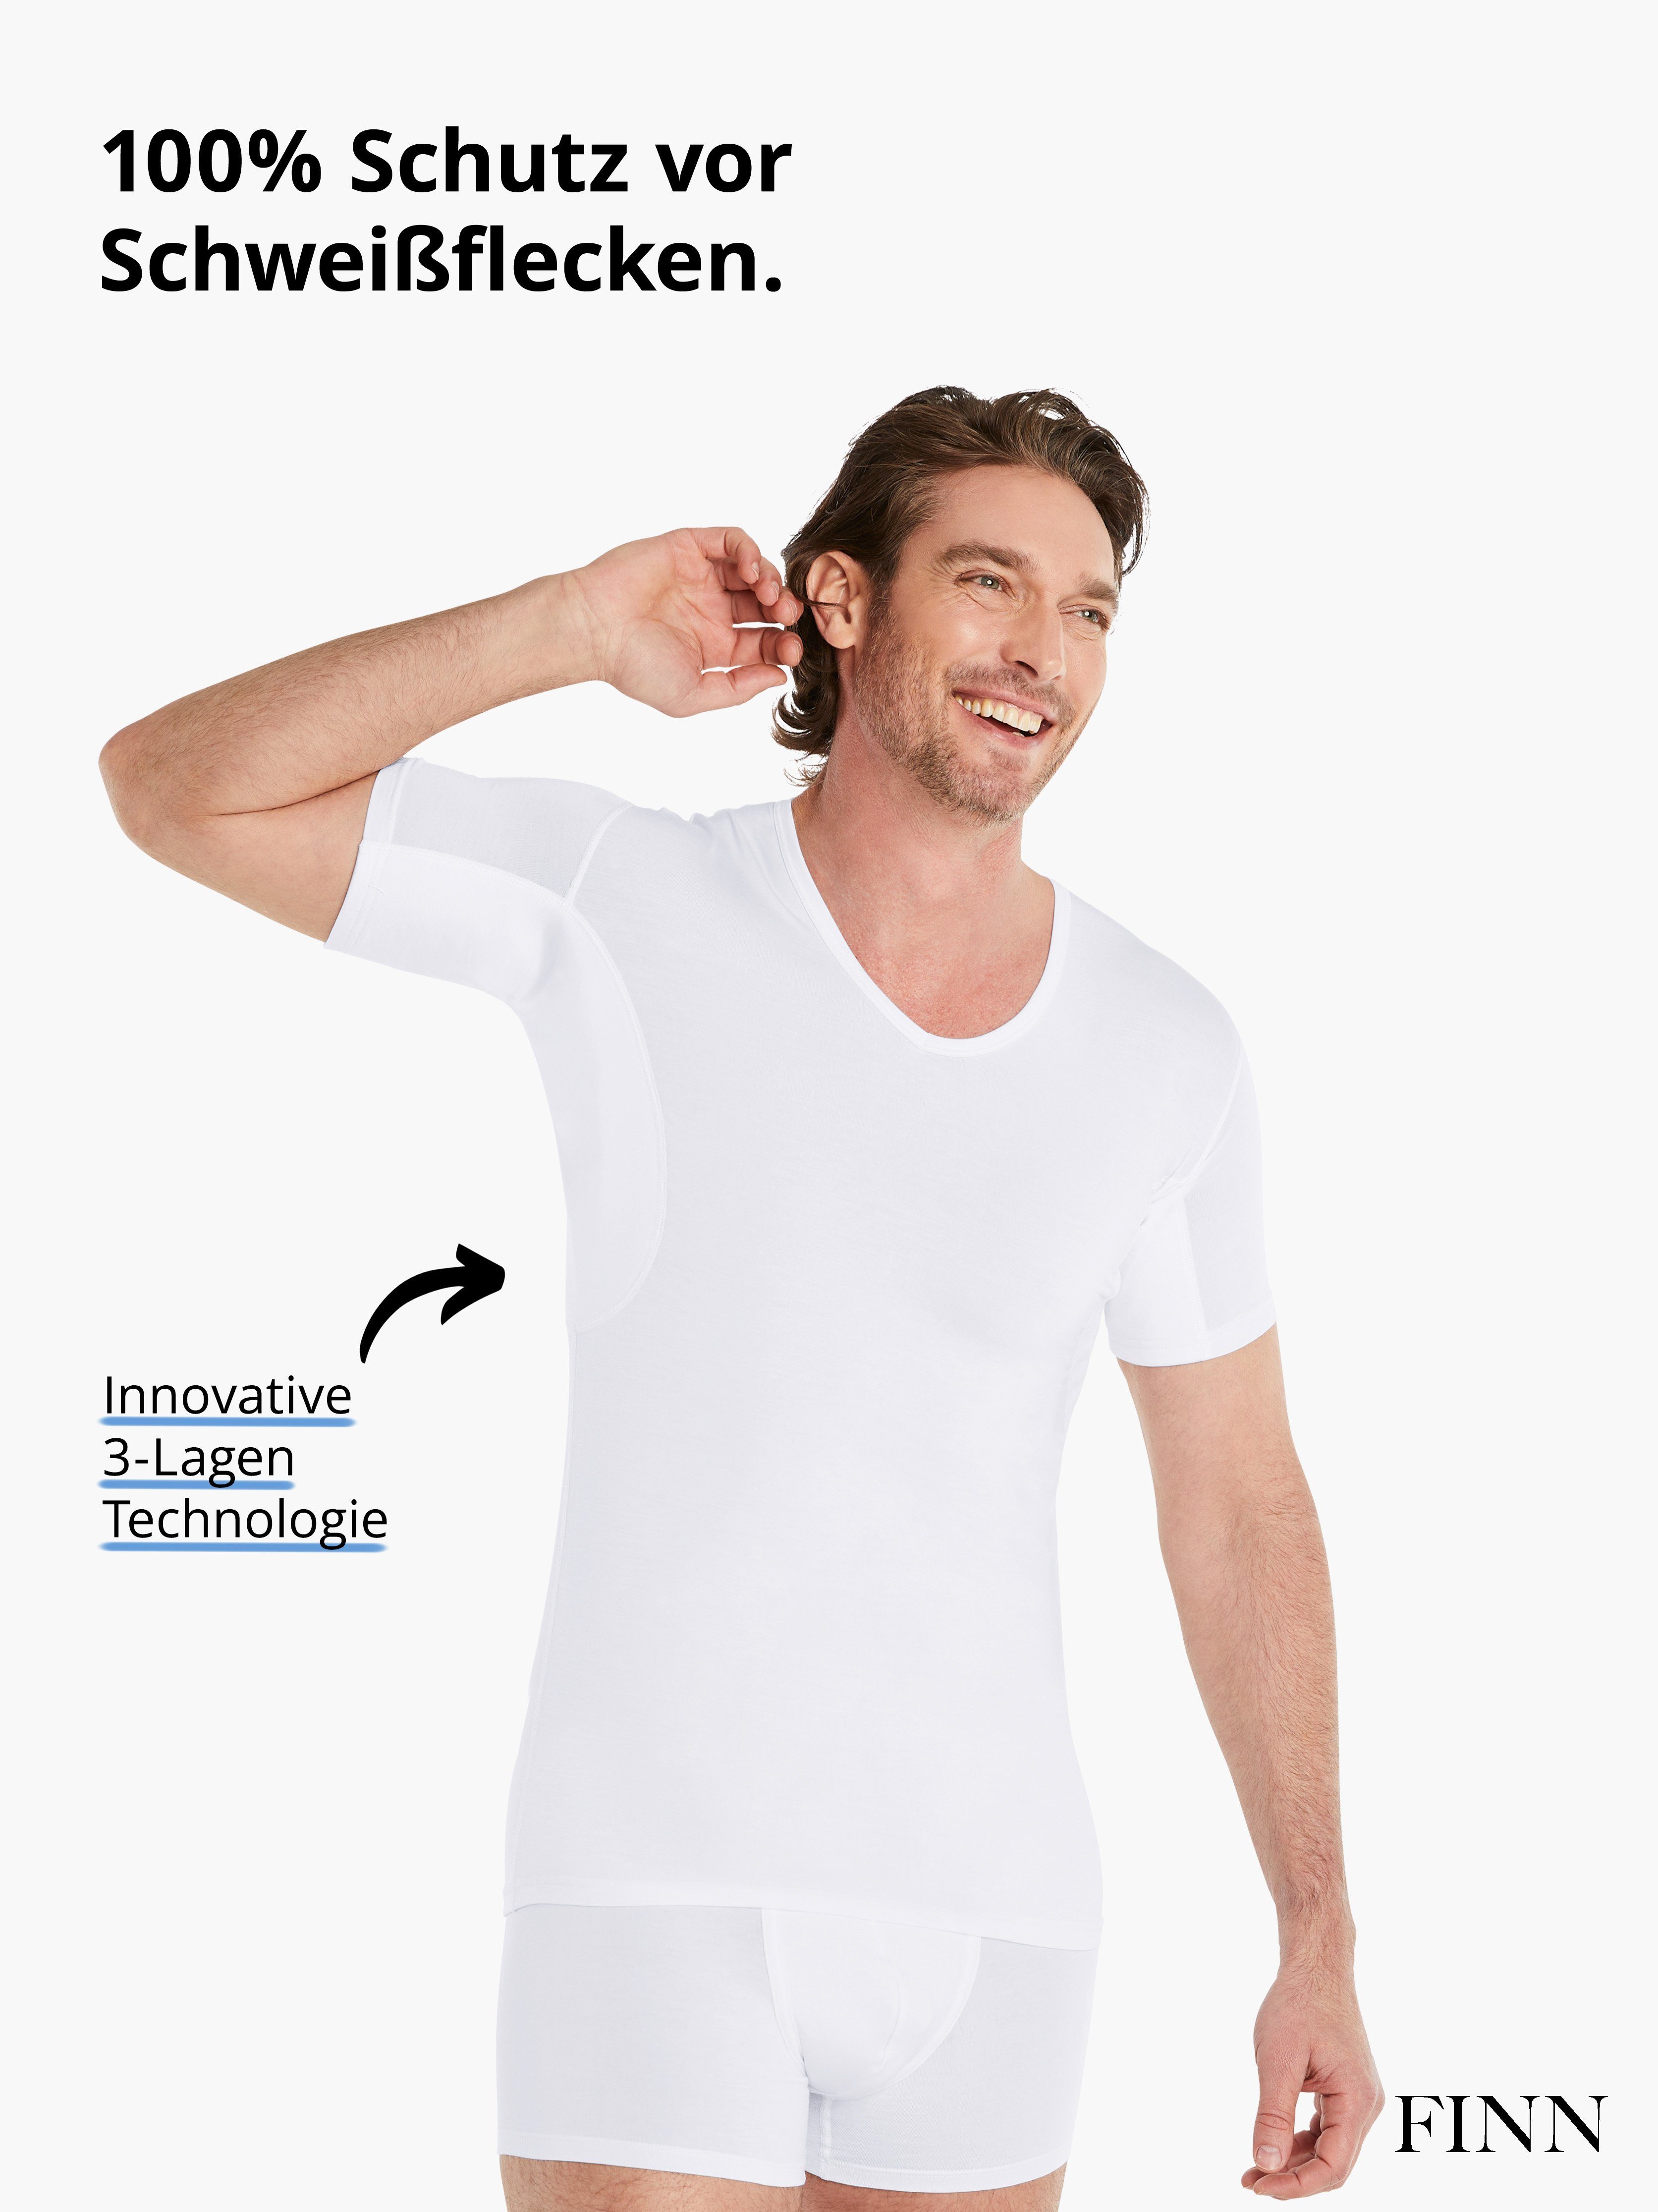 vor Rücken garantierte am Unterhemd FINN Schutz zusätzlicher Wirkung 100% Einlage mit Anti-Schweiß Design Schweißflecken, Unterhemd Herren